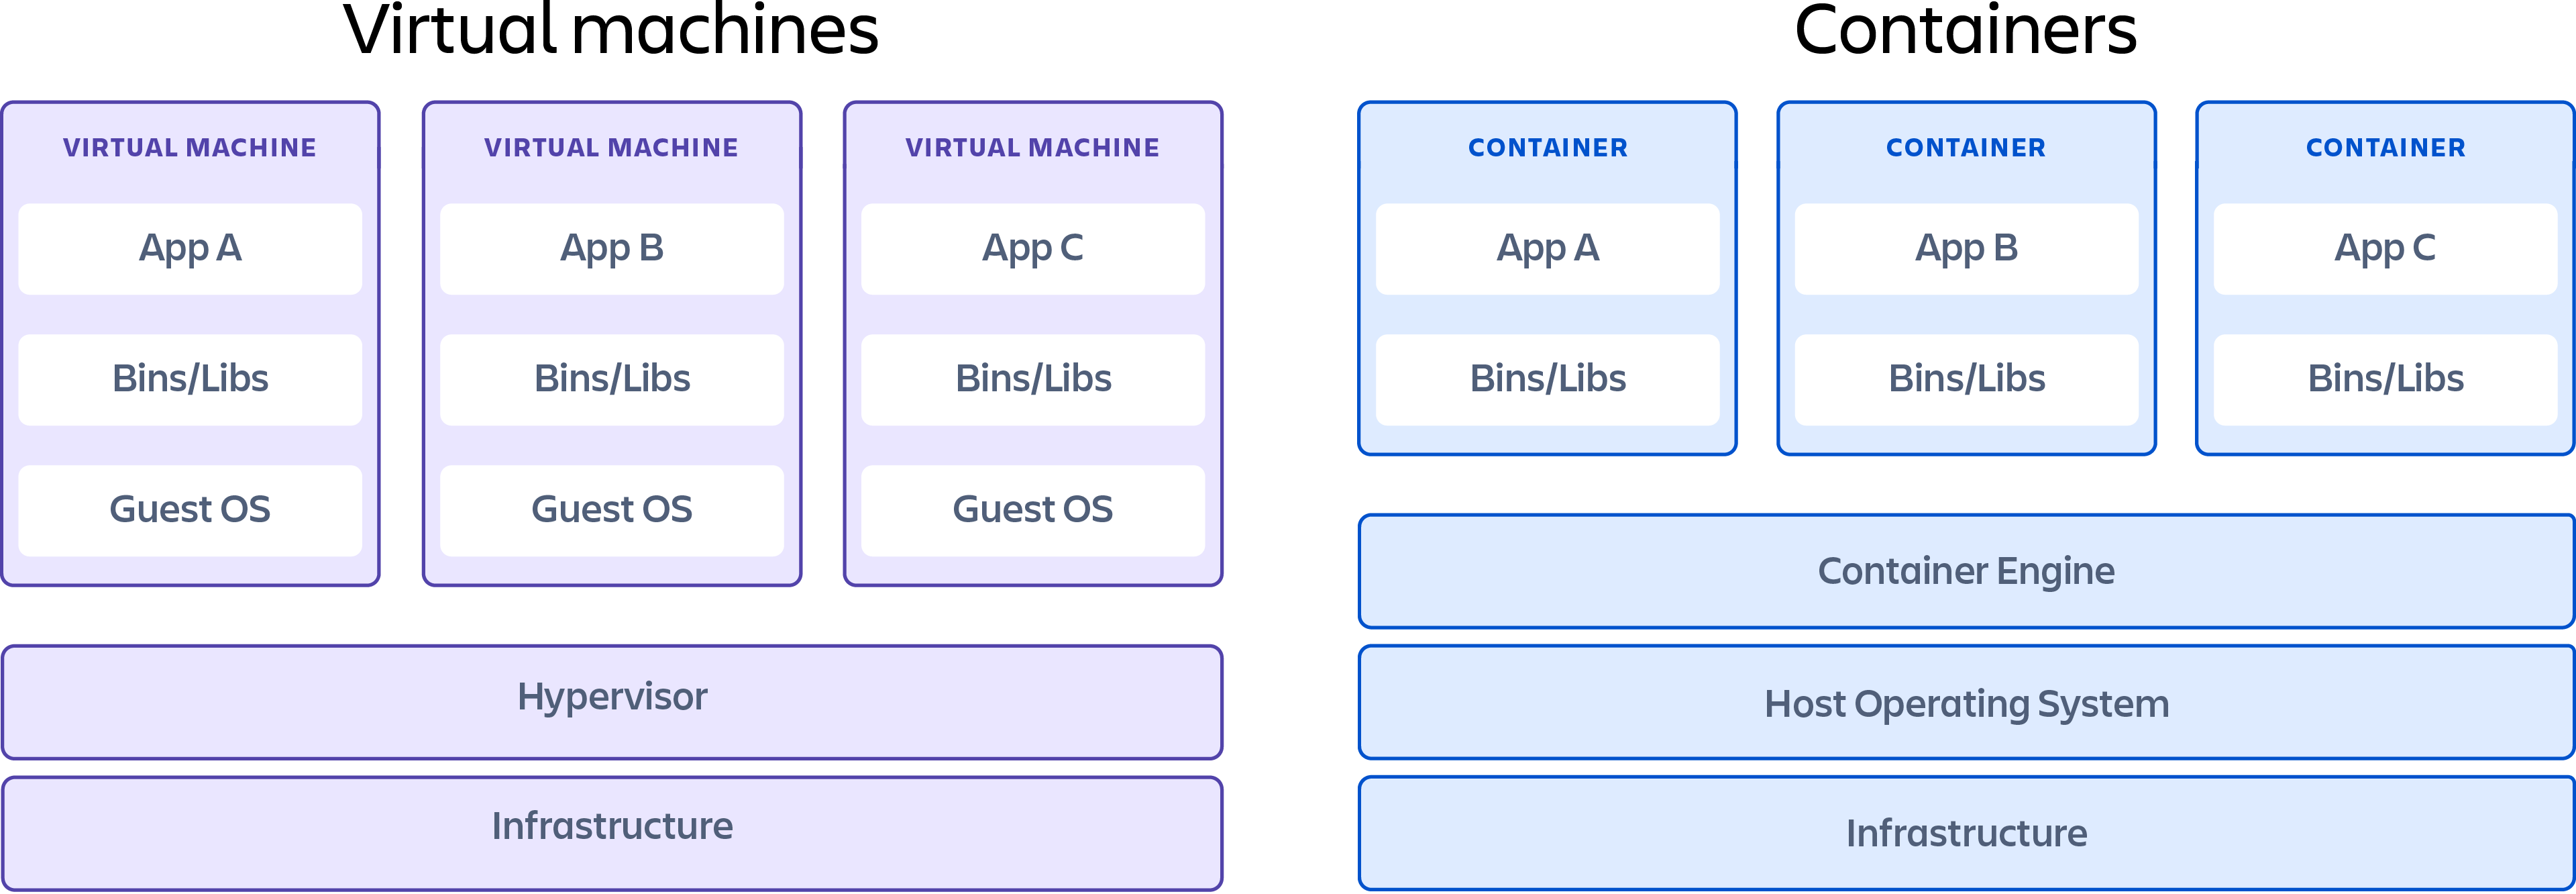 Conteneur montrant les différences entre les machines virtuelles et les conteneurs